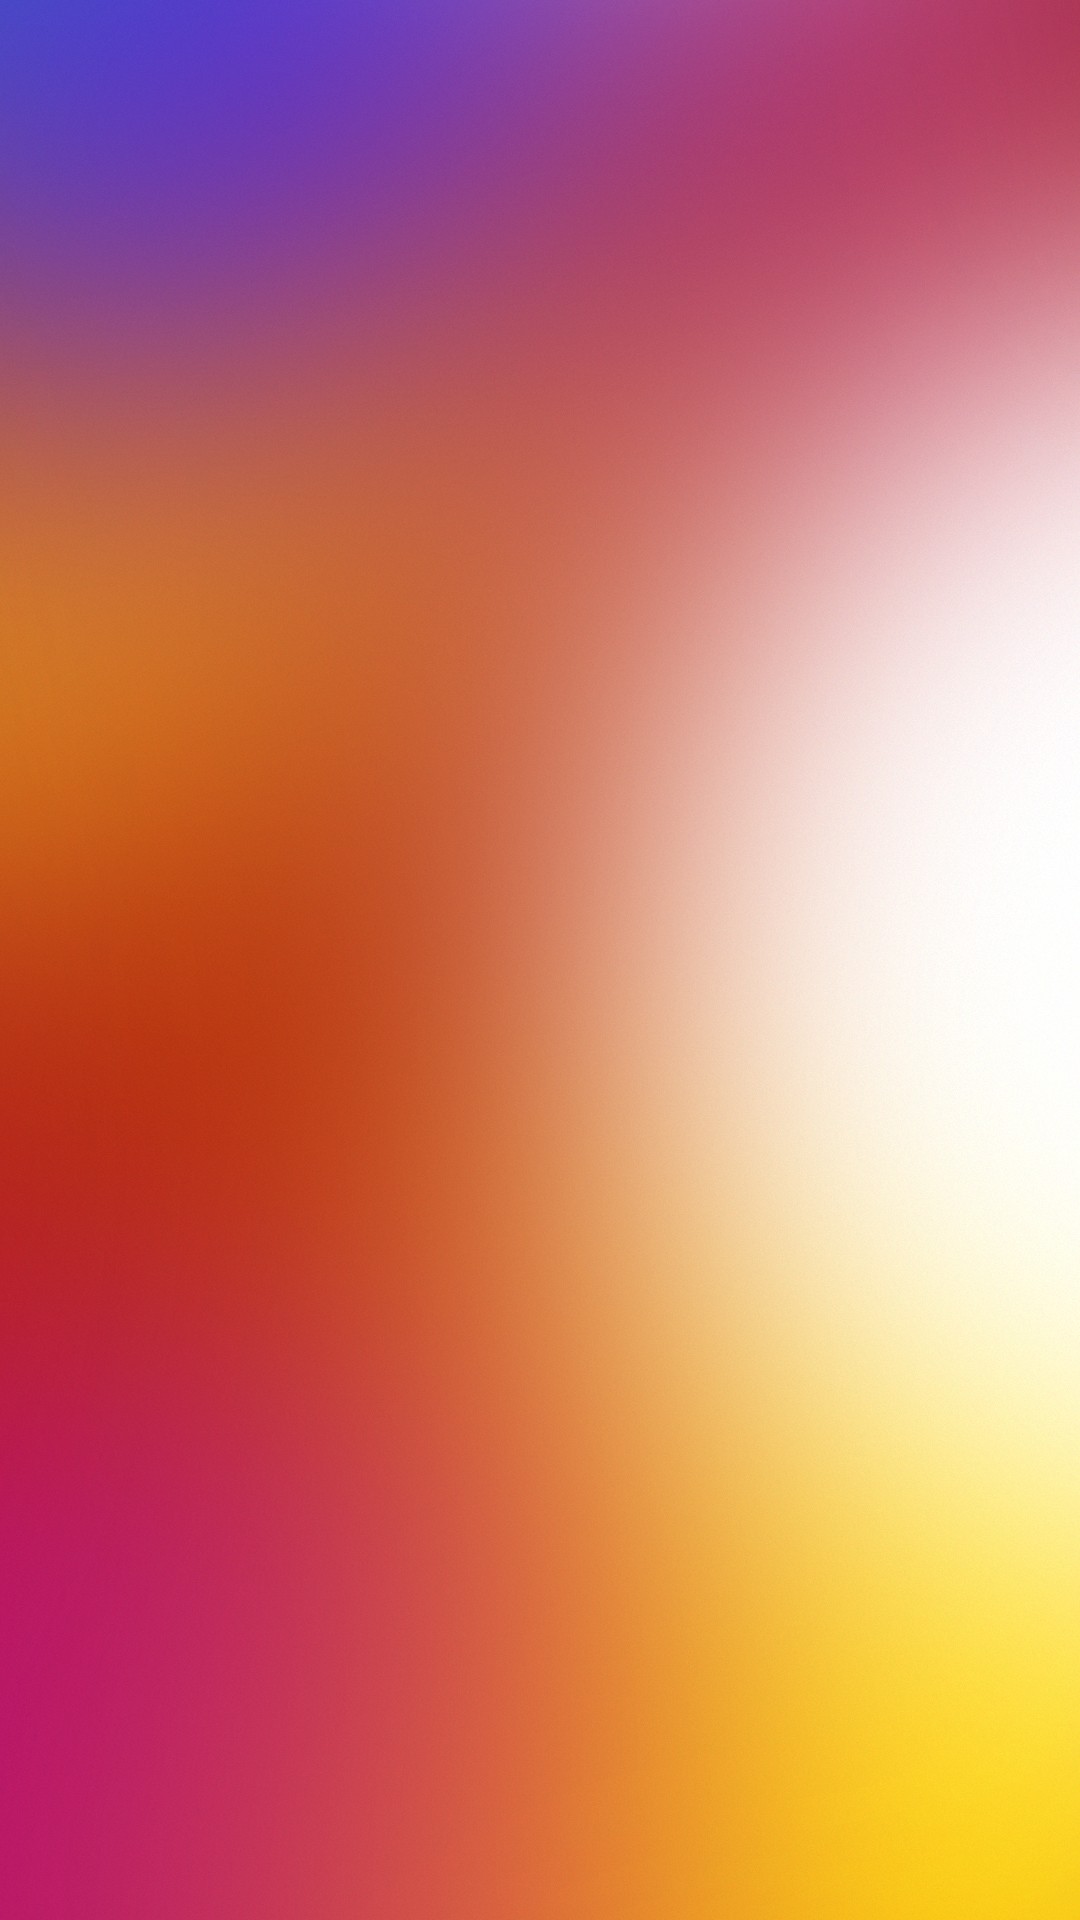 레노버 k5 참고 벽지 hd,하늘,주황색,분홍,빨간,노랑